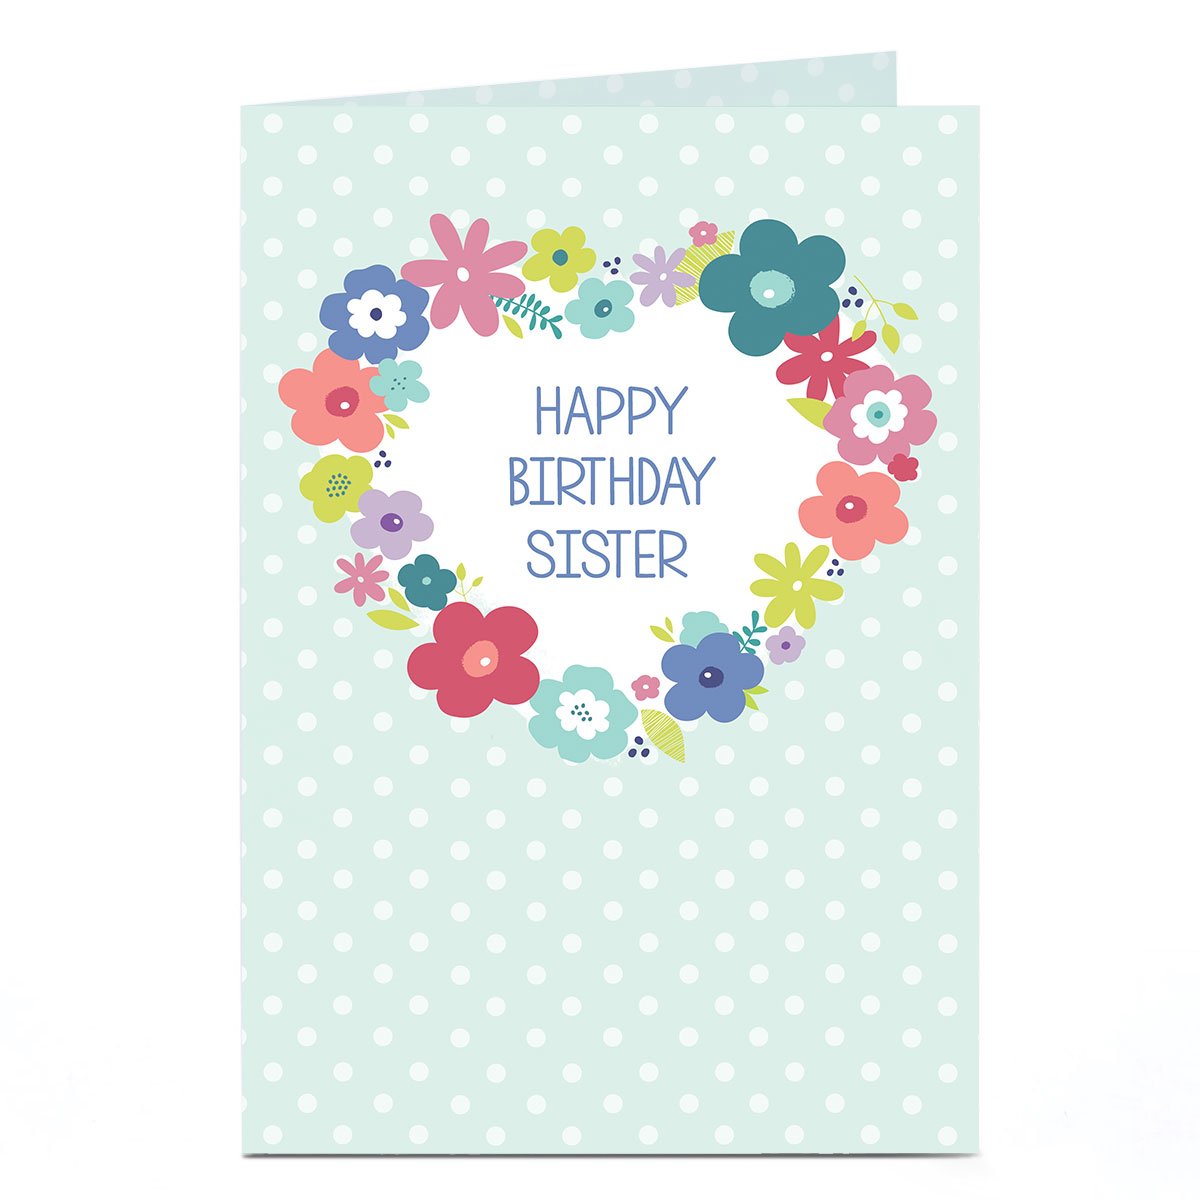 Personalised Birthday Card - Flower Wreath Sister